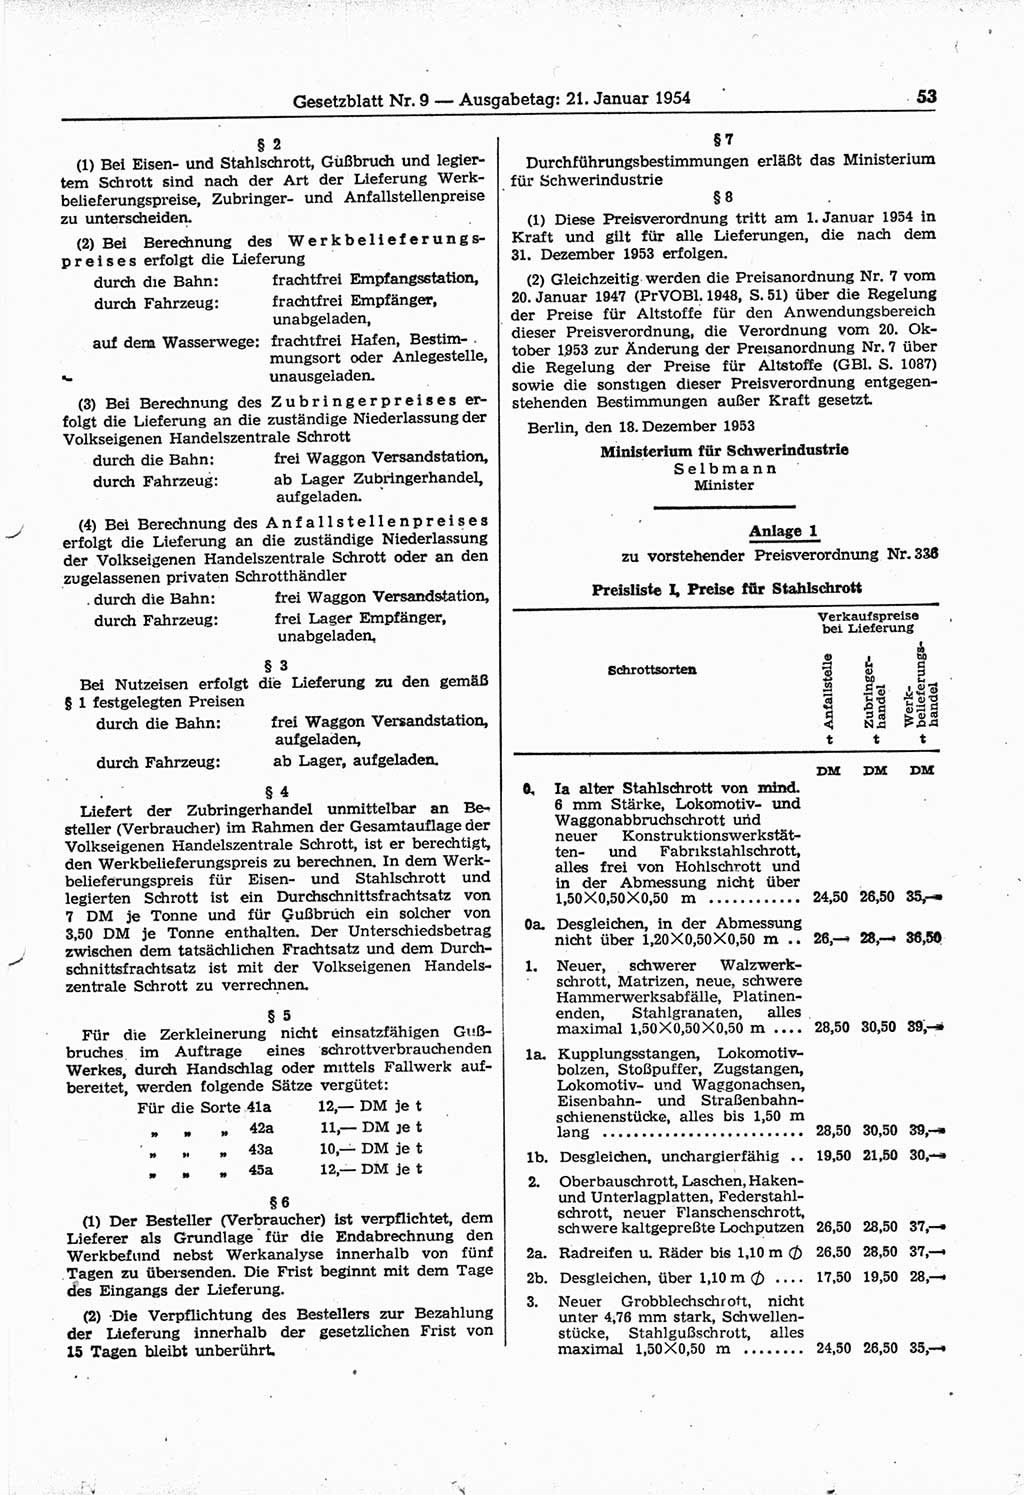 Gesetzblatt (GBl.) der Deutschen Demokratischen Republik (DDR) 1954, Seite 53 (GBl. DDR 1954, S. 53)